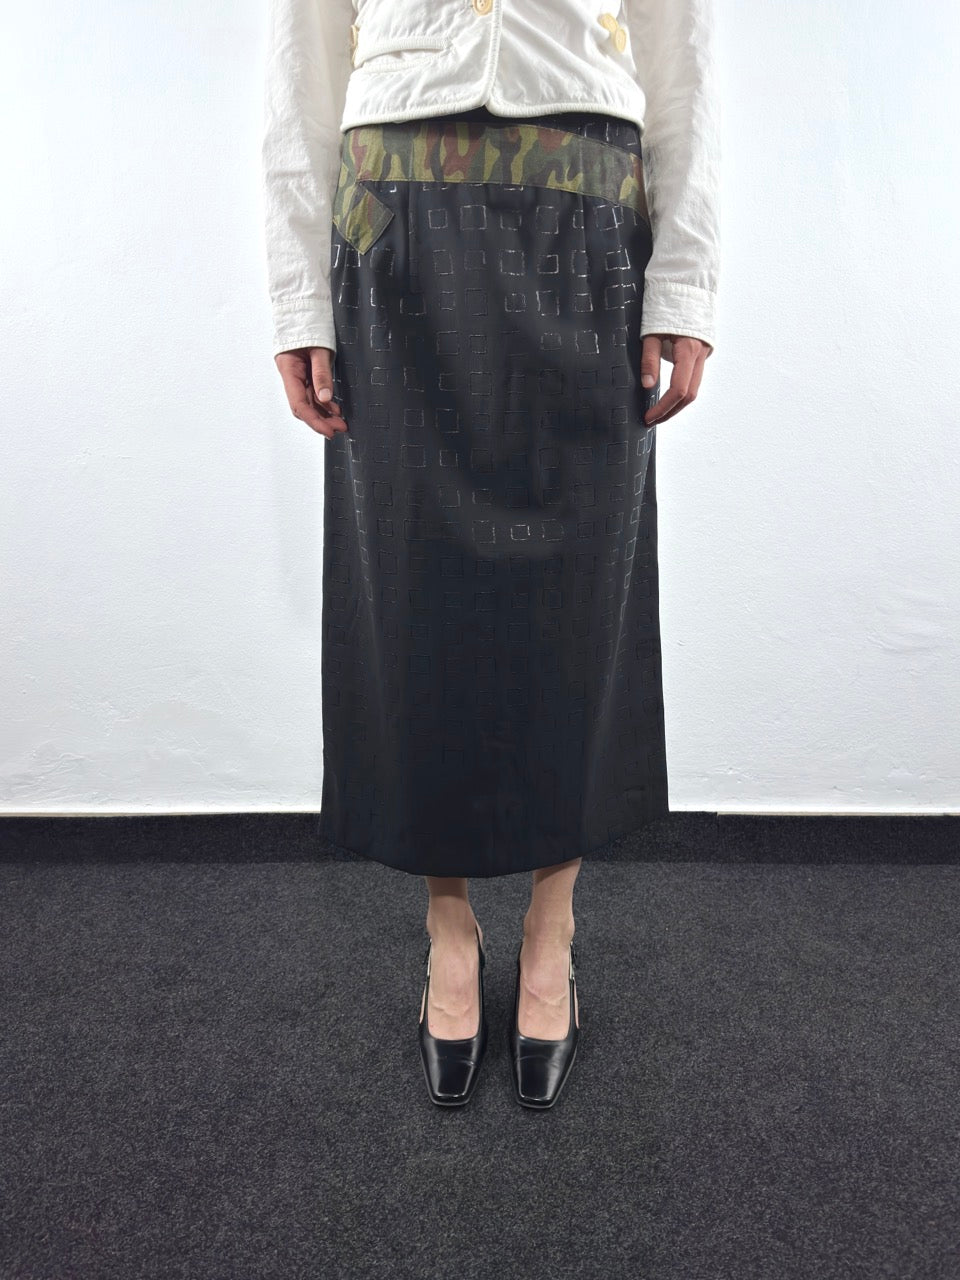 S/S 2001 Maxi Skirt (M)